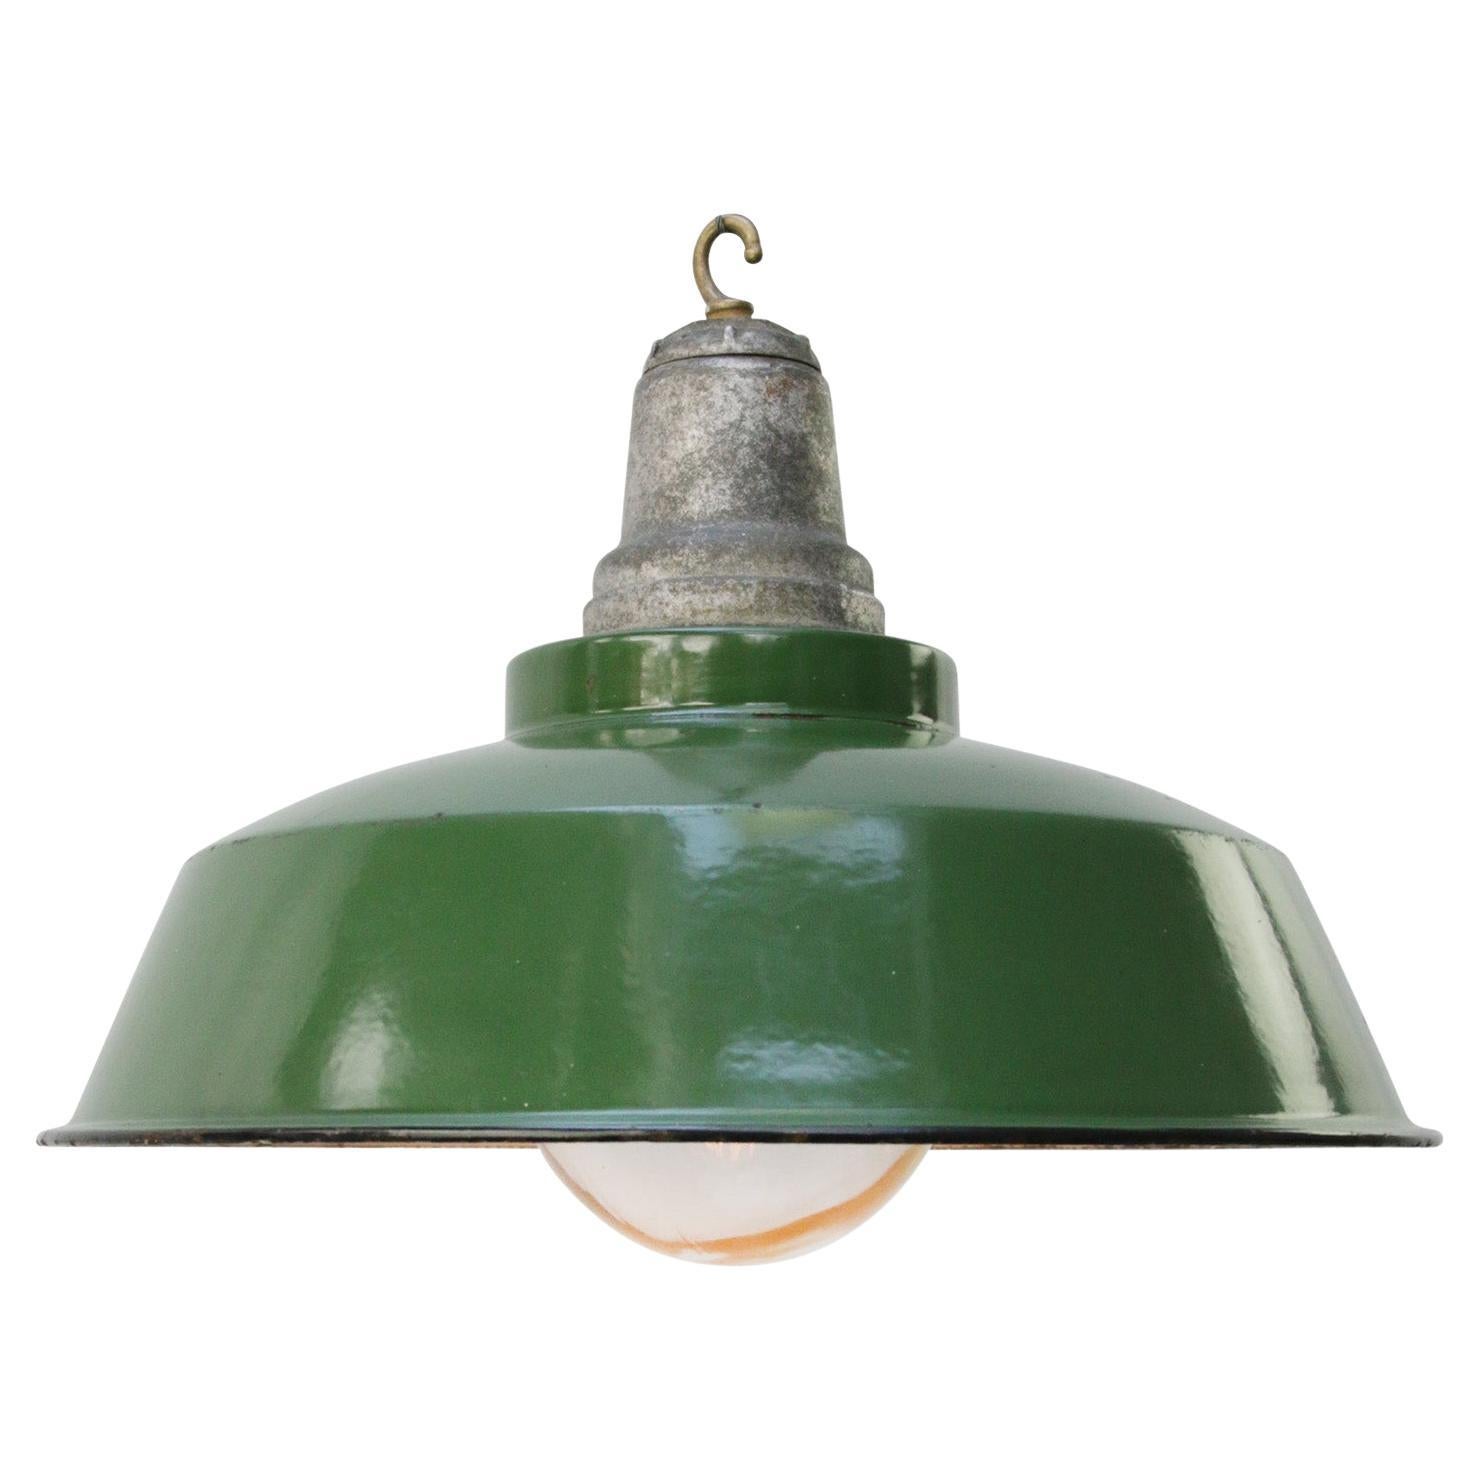 Lampe à suspension industrielle américaine vintage en verre transparent émaillé vert